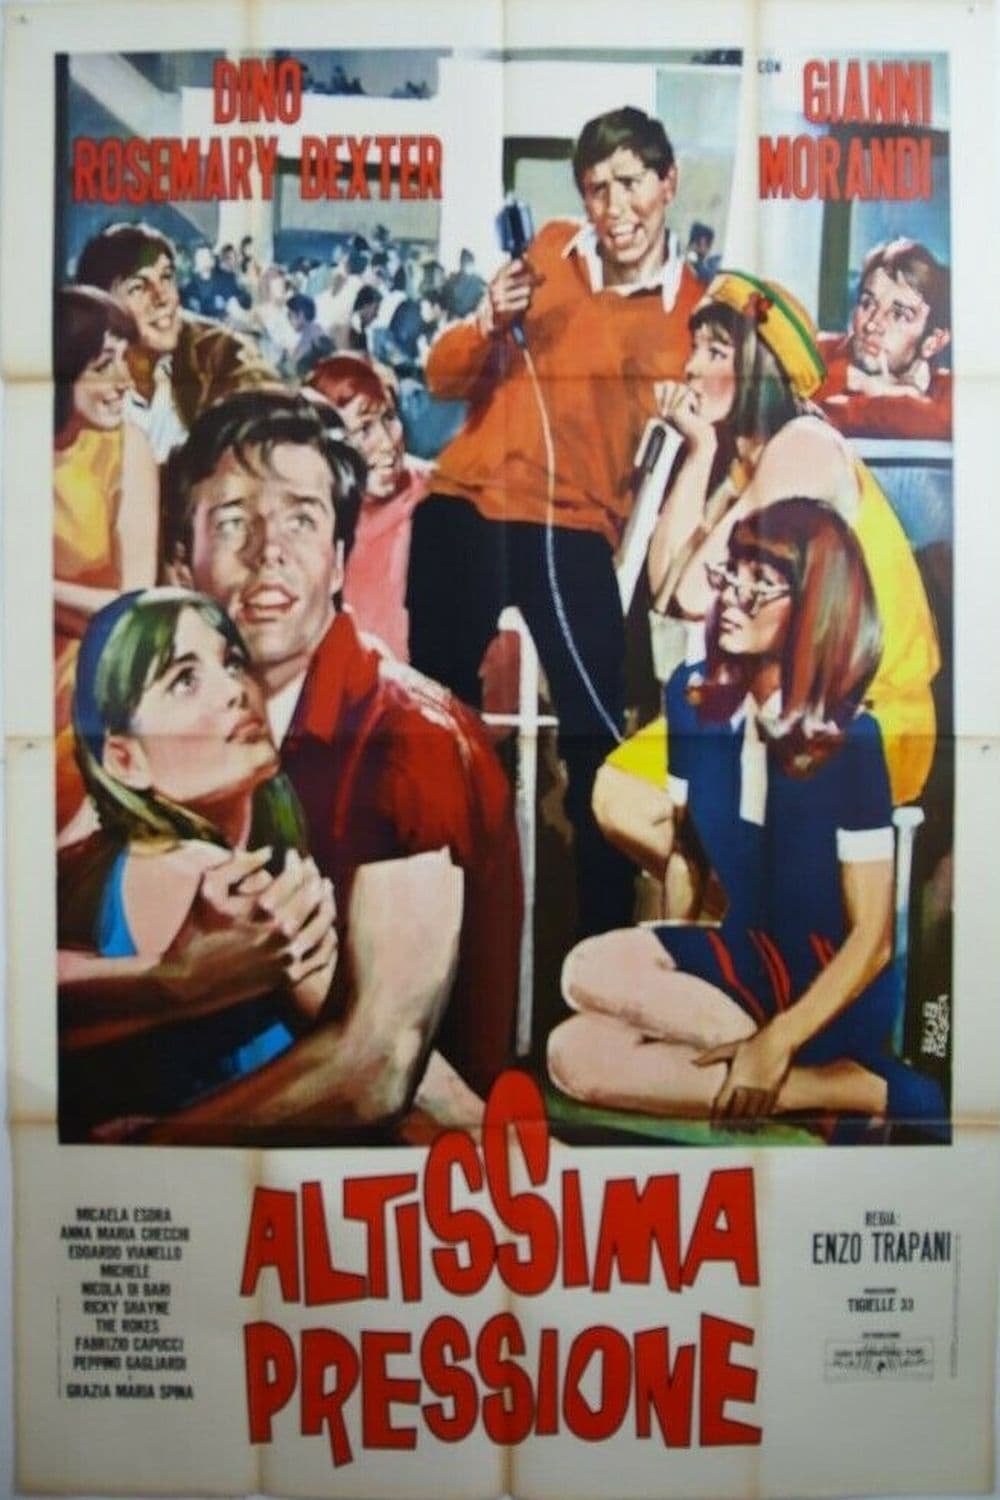 Altissima pressione (1965)